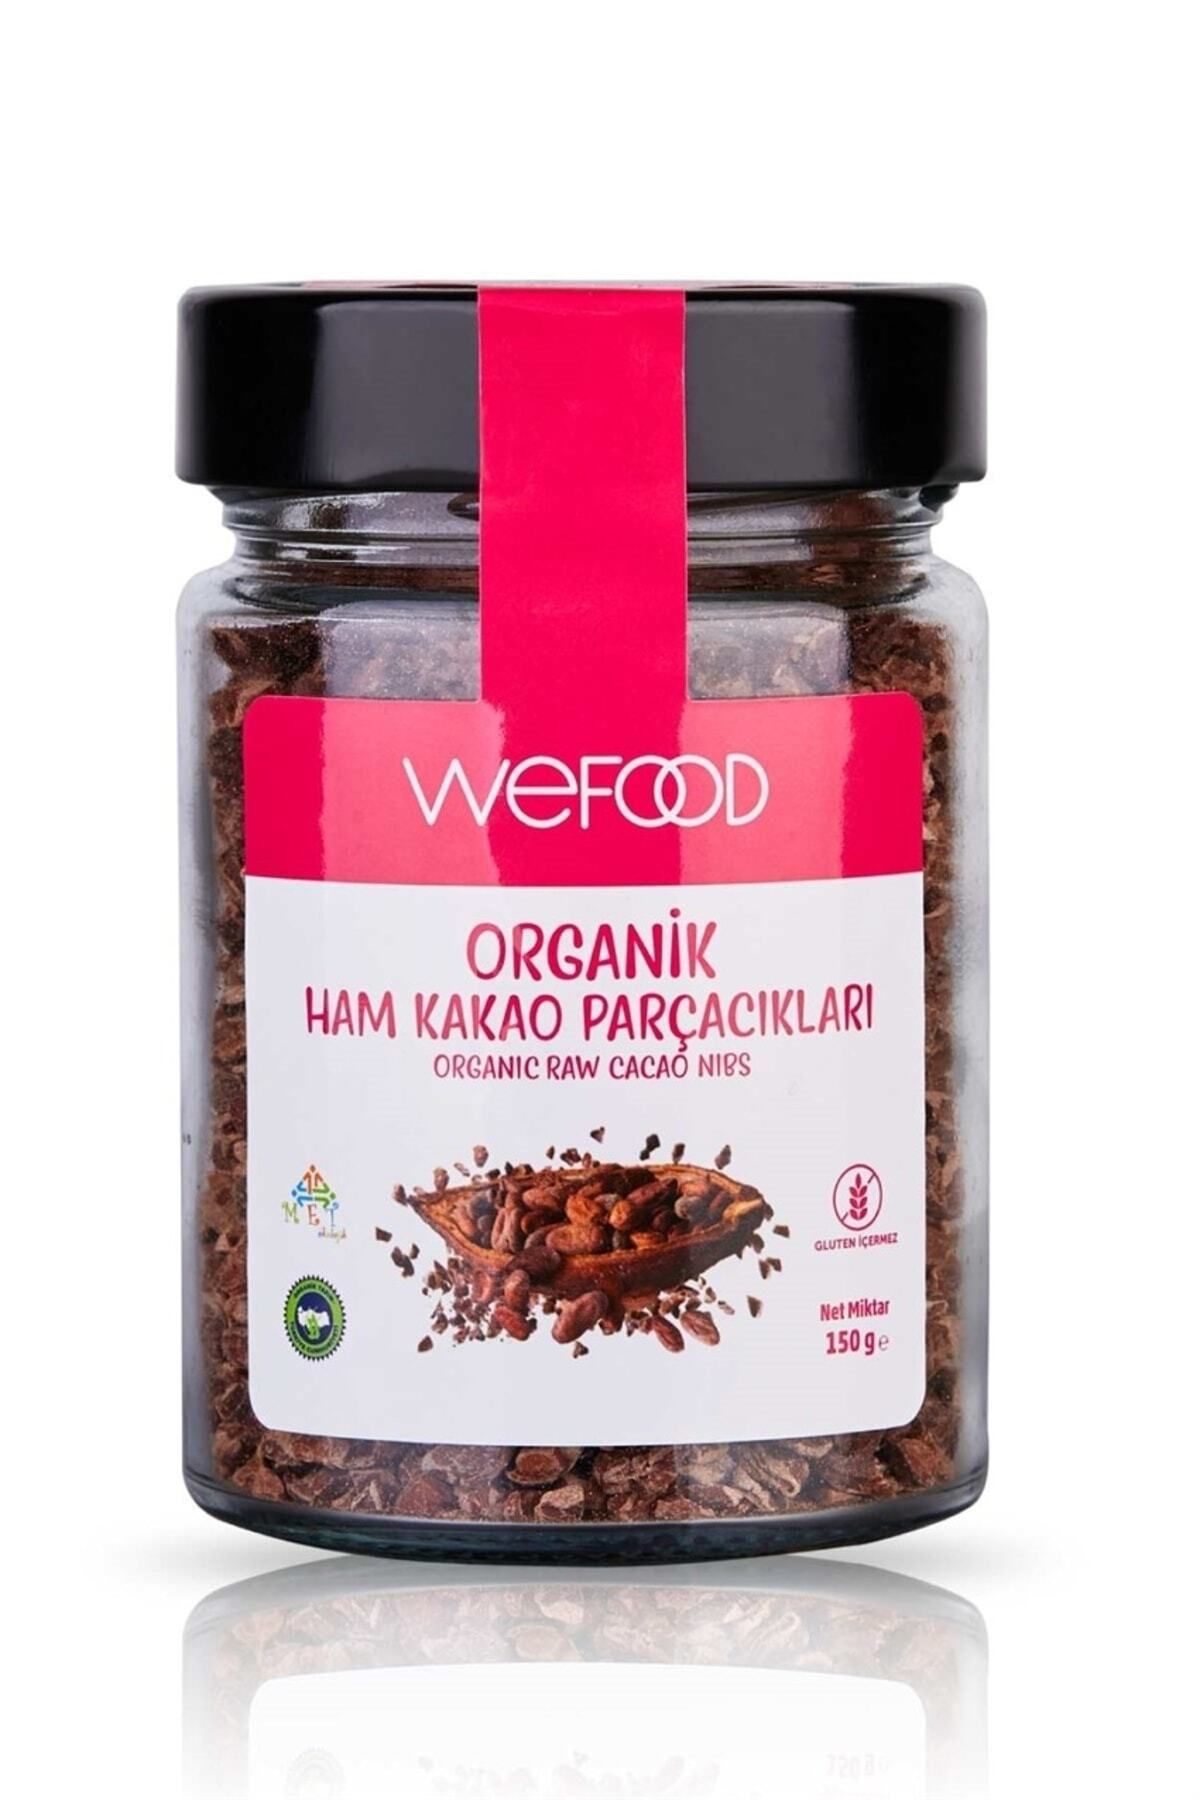 Wefood Organik X 2 Adet Ham Kakao Parçacıkları 150 gr